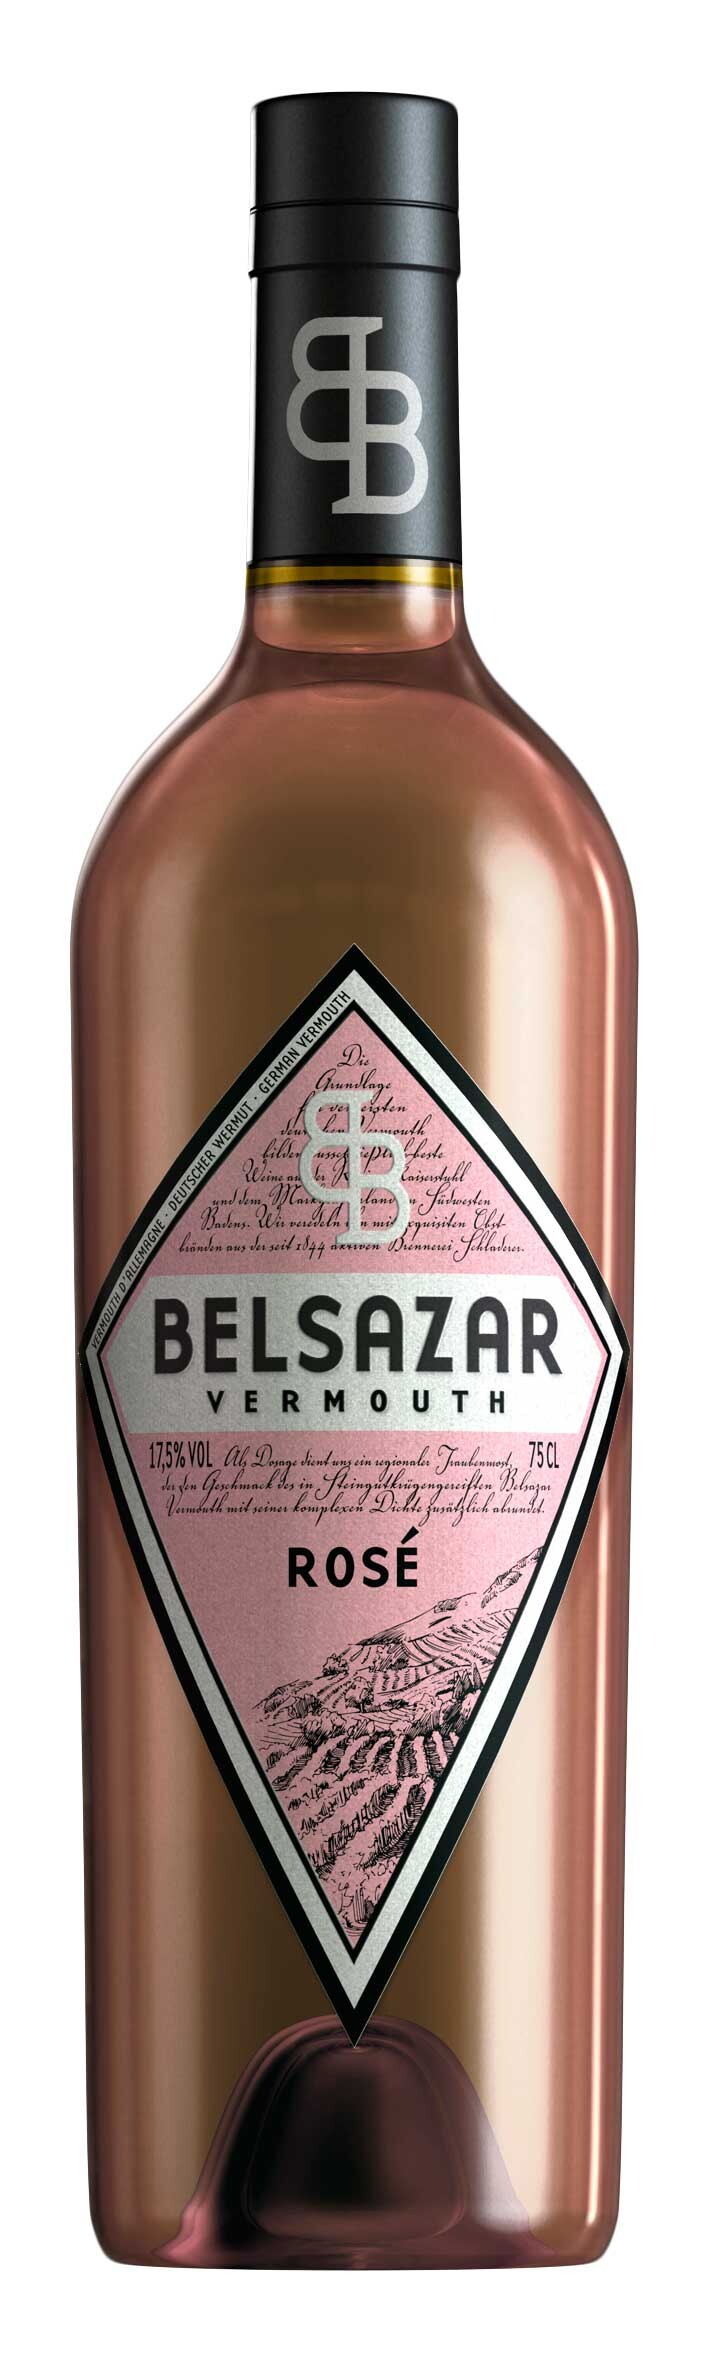 Vermouth Belsazar Rose 75cl 17,5%